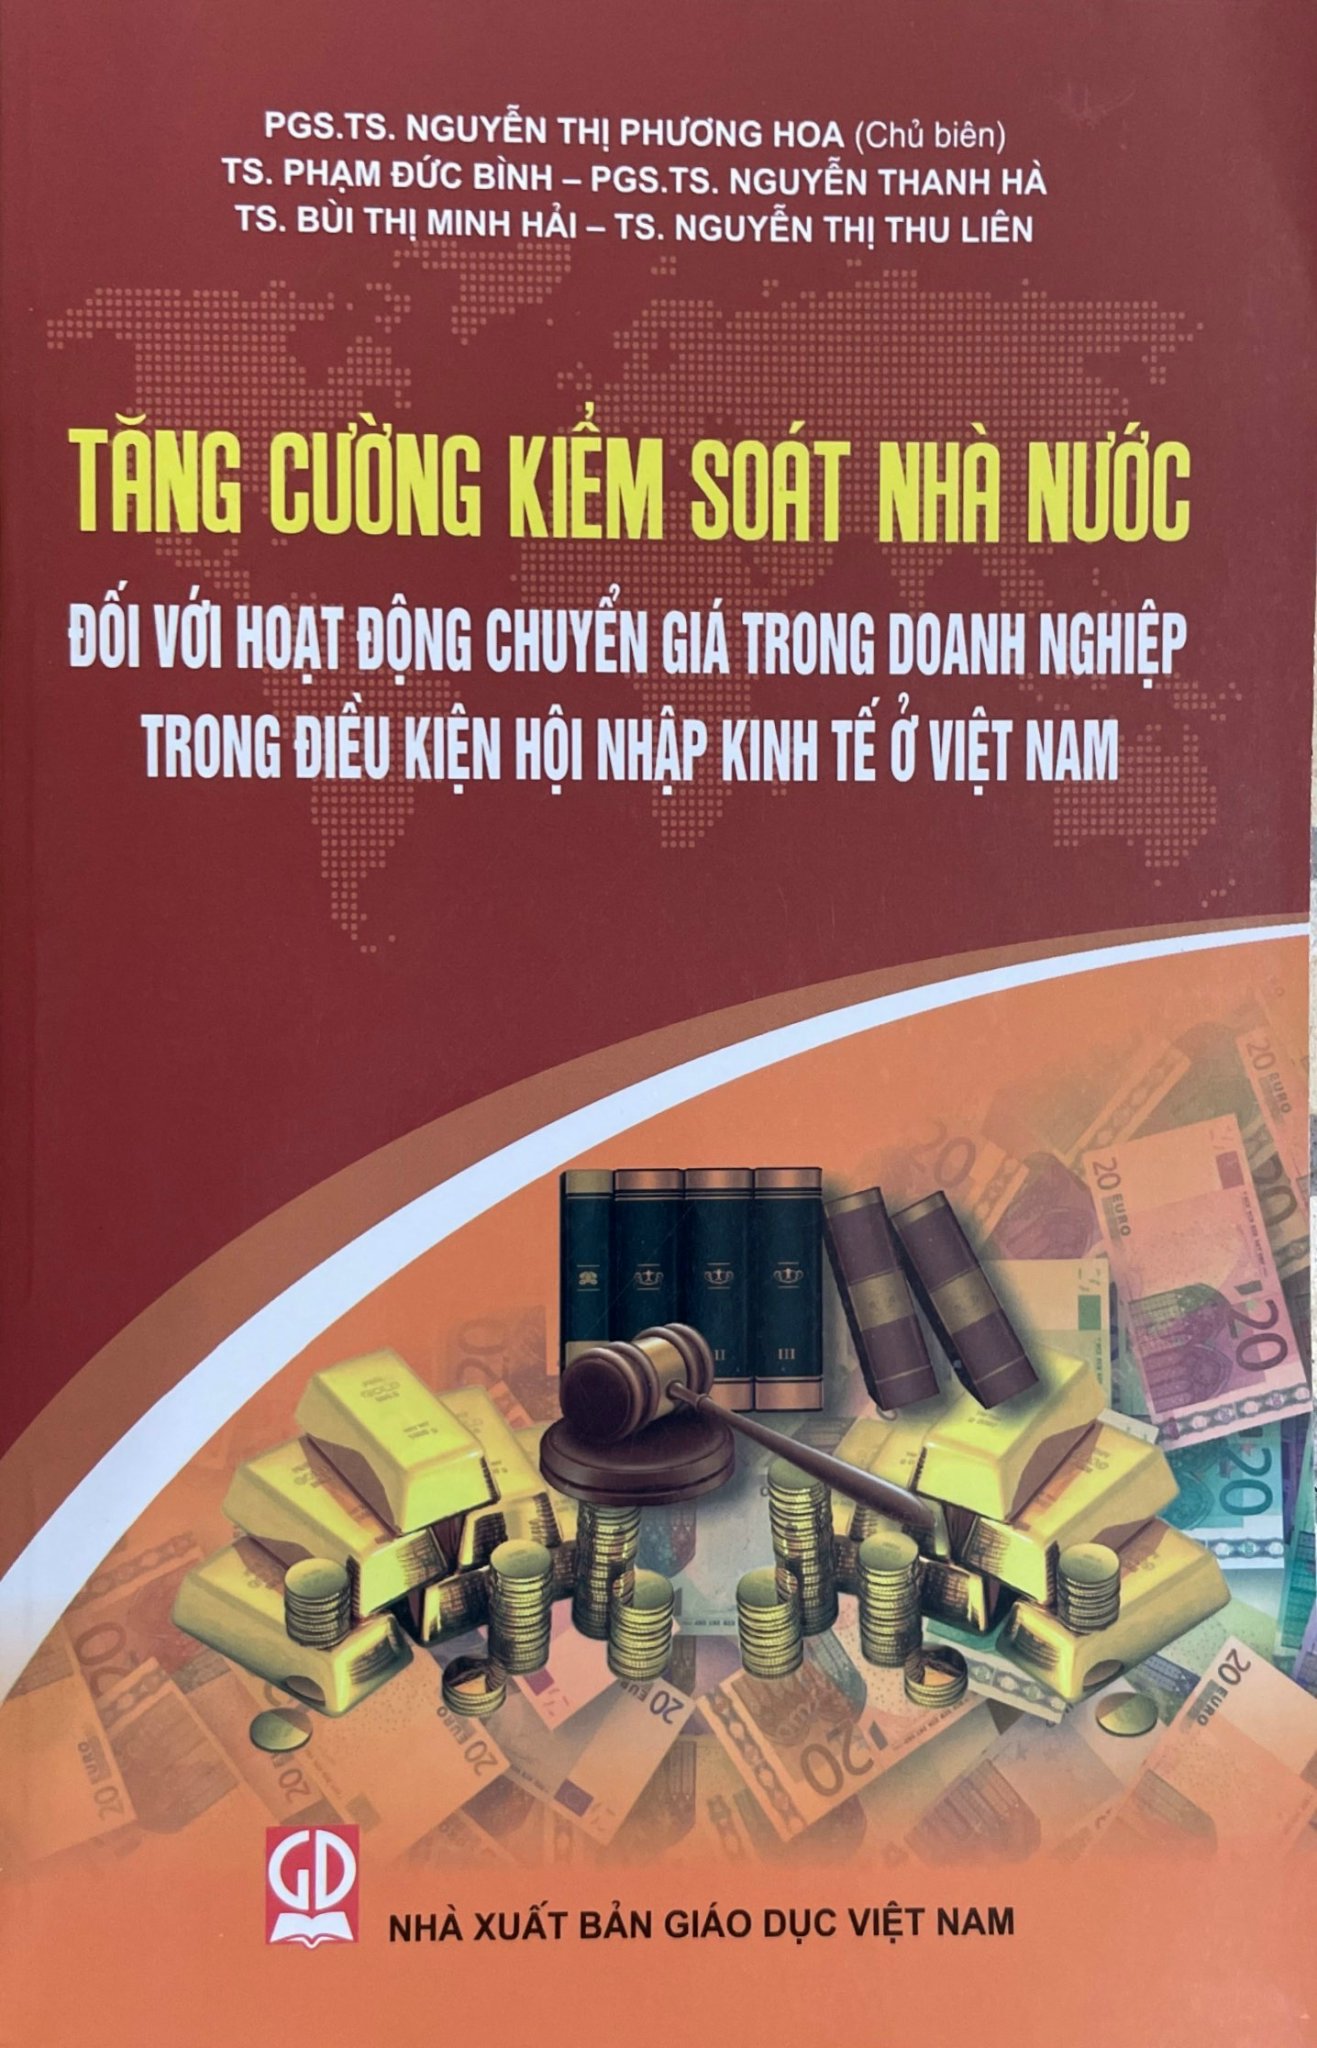 Tăng cường đối với kiểm soát nhà nước đối với hoạt động chuyển giá trong doanh nghiệp trong điều kiện hội nhập kinh tế ở Việt Nam